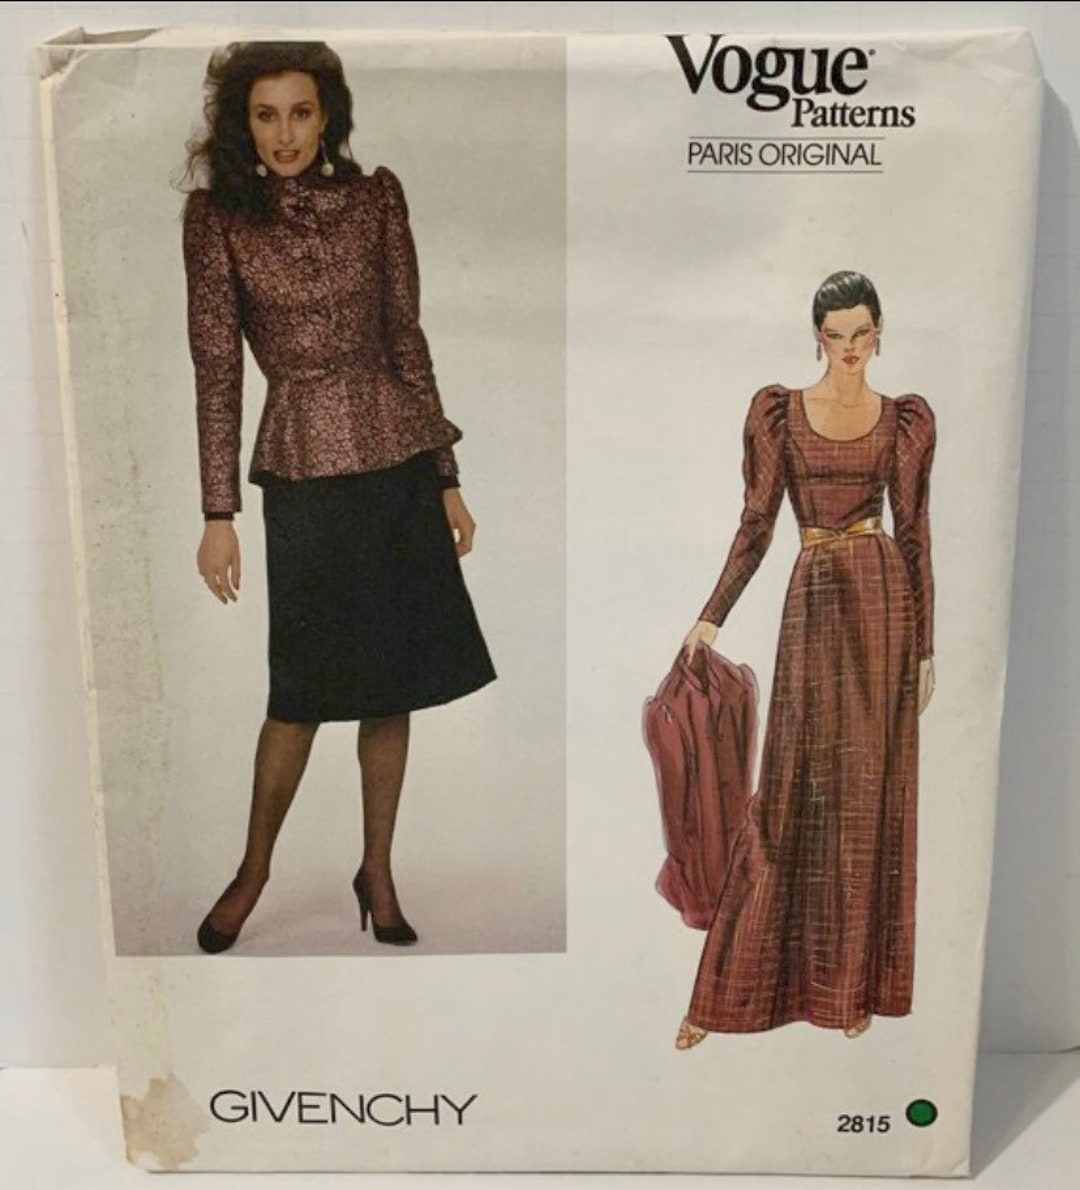 Vintage Vogue 2815 Paris Original GIVENCHY Sewing Pattern Misses ...